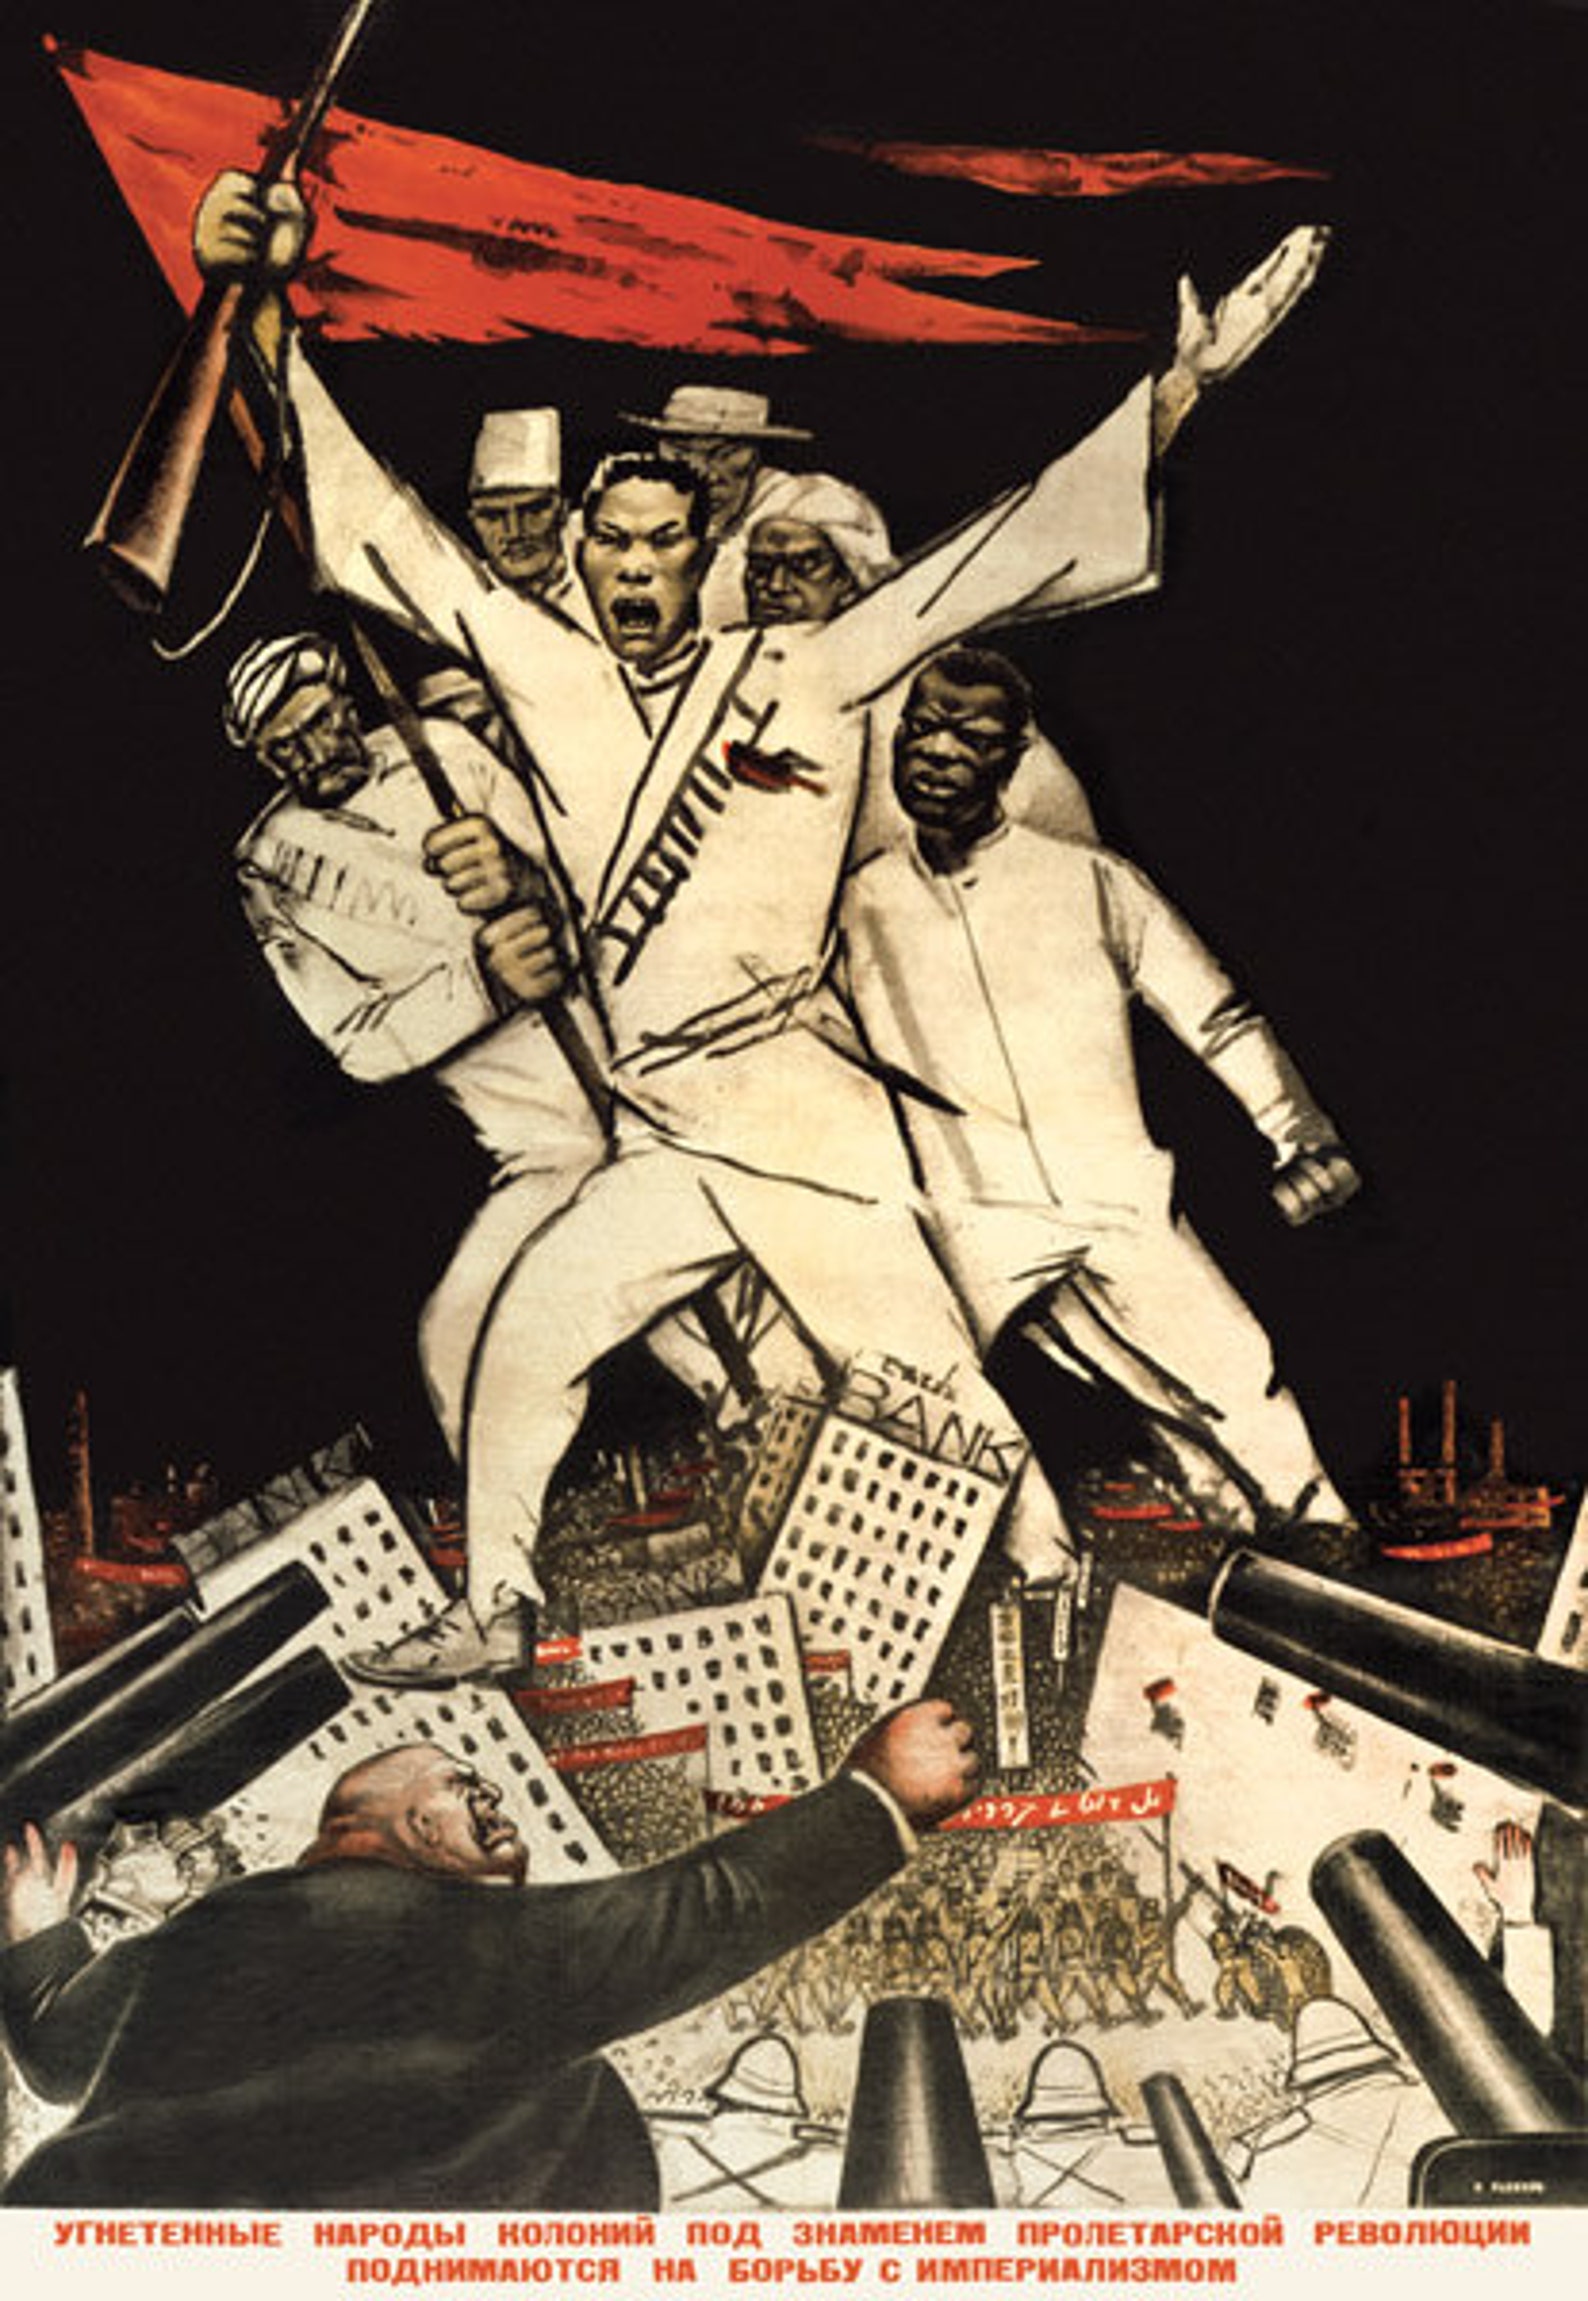 Мировая революция рабочих. Плакаты Октябрьской революции 1917. Мировая Коммунистическая революция. Мировая революция пролетариата.